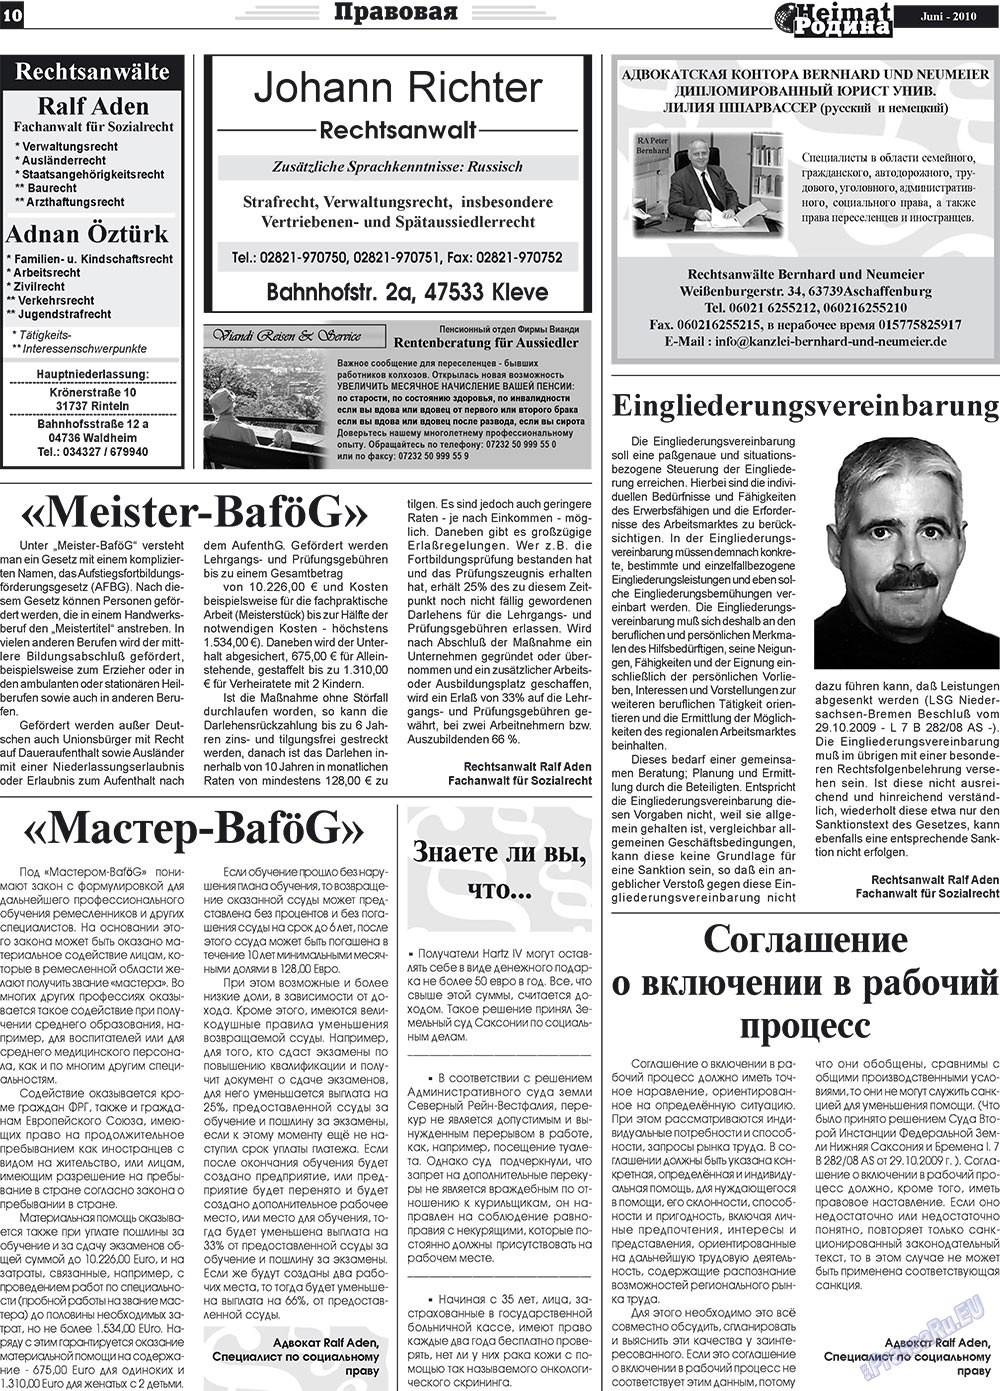 Heimat-Родина (газета). 2010 год, номер 6, стр. 10